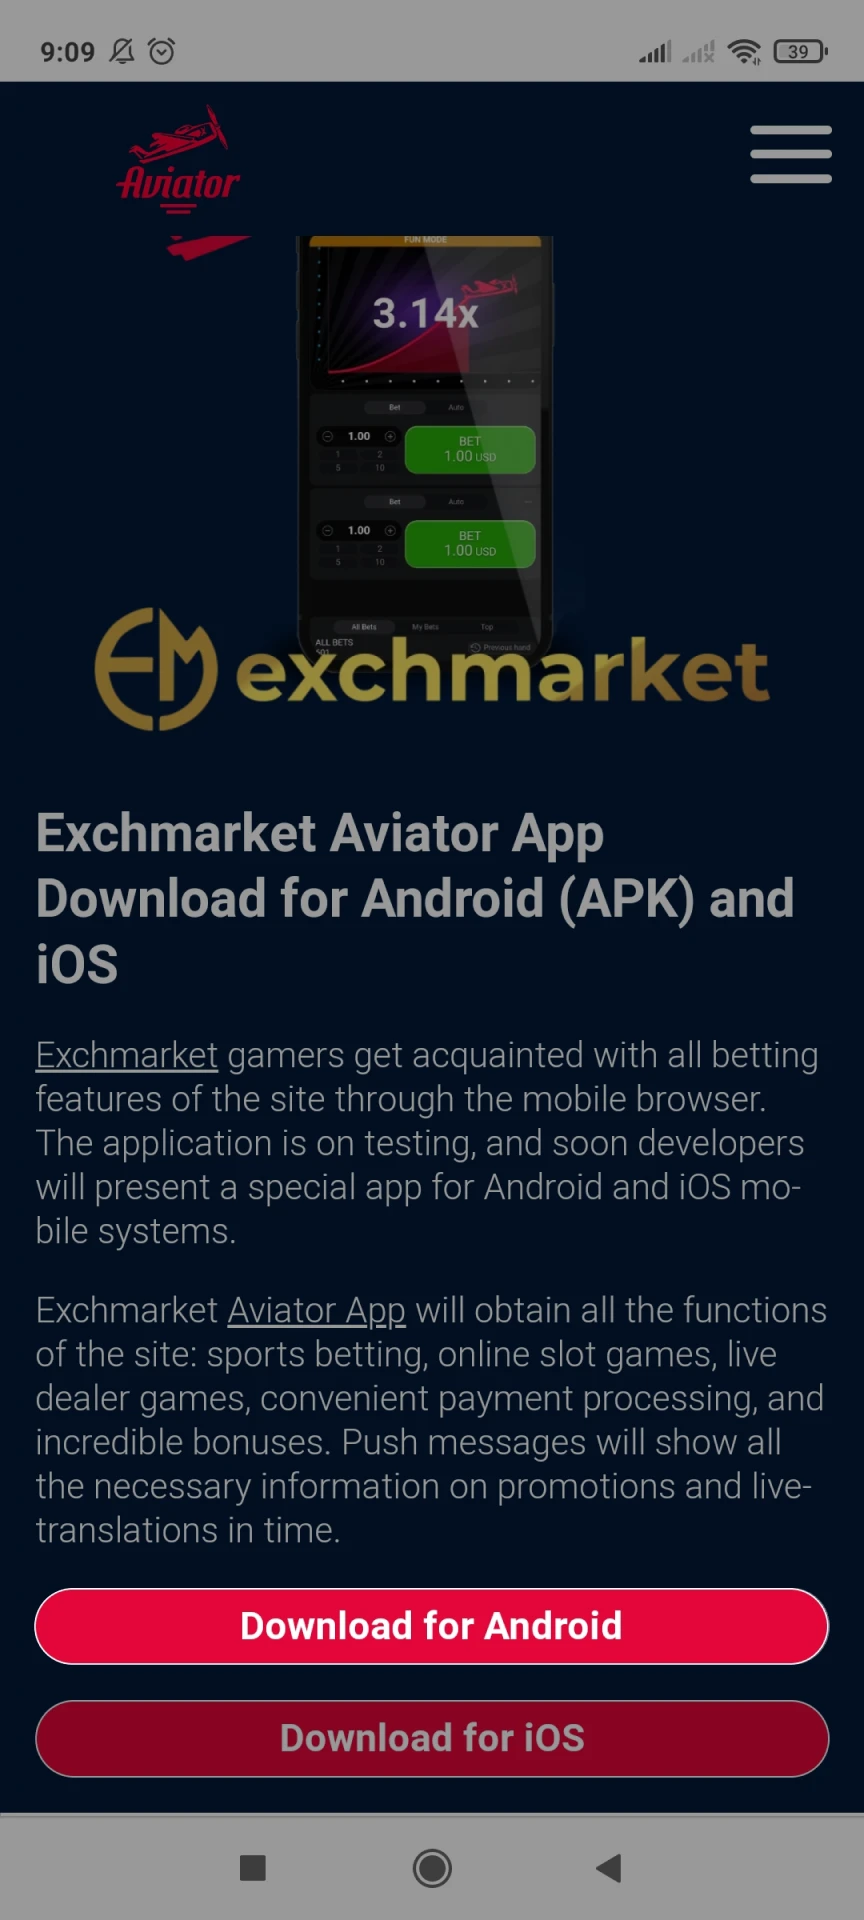 Vá para a página de download do Exchmarket para Android.